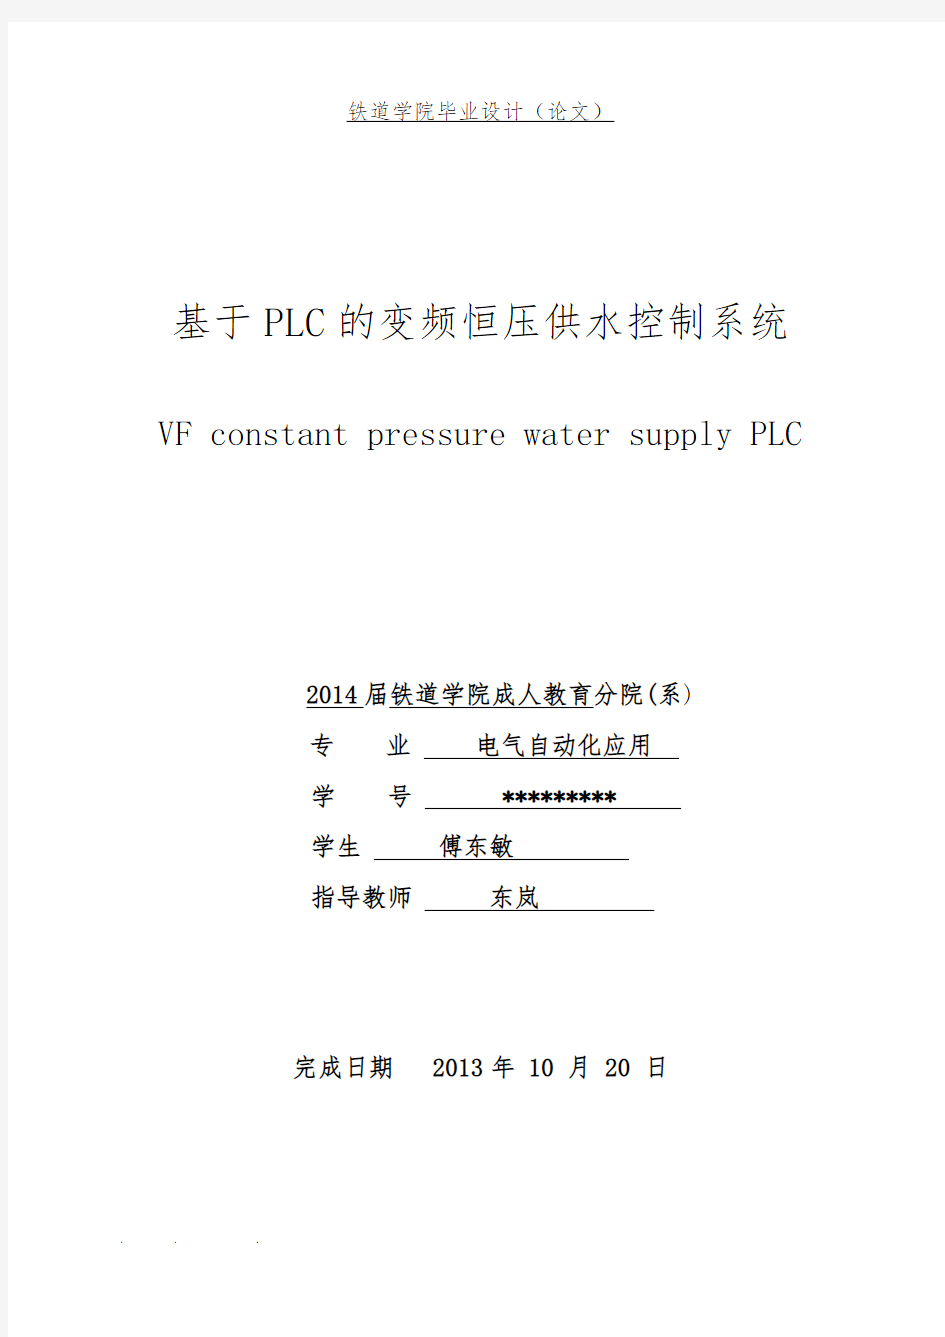 基于plc的变频恒压供水控制系统方案